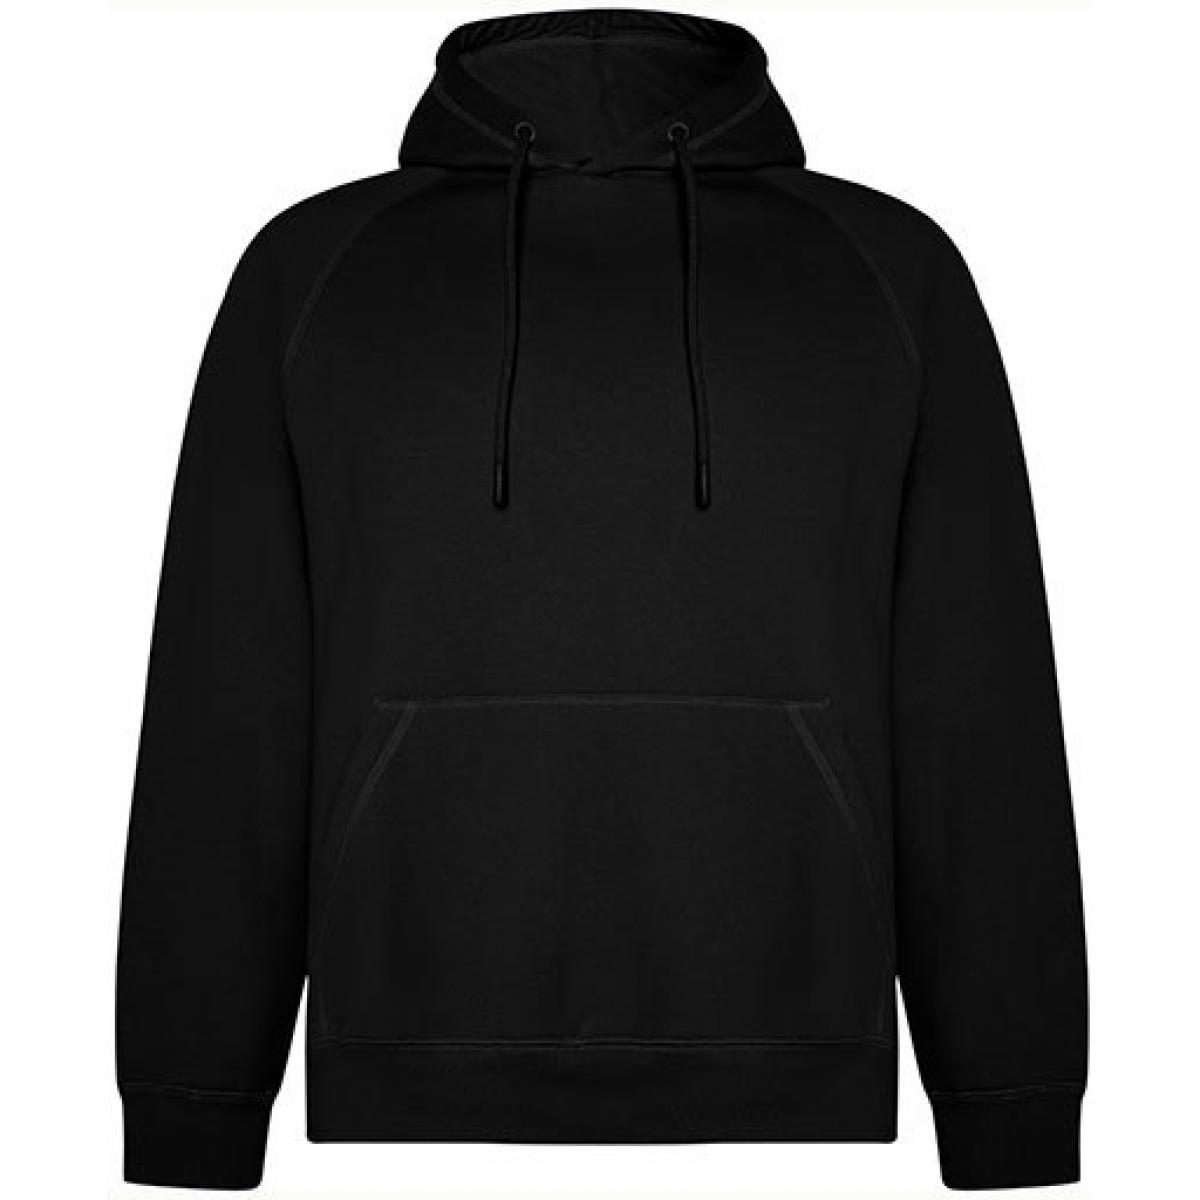 Hersteller: Roly Eco Herstellernummer: SU1074 Artikelbezeichnung: Vinson Organic Hooded Sweatshirt - Unisex Kapuzenpullover Farbe: Black 02